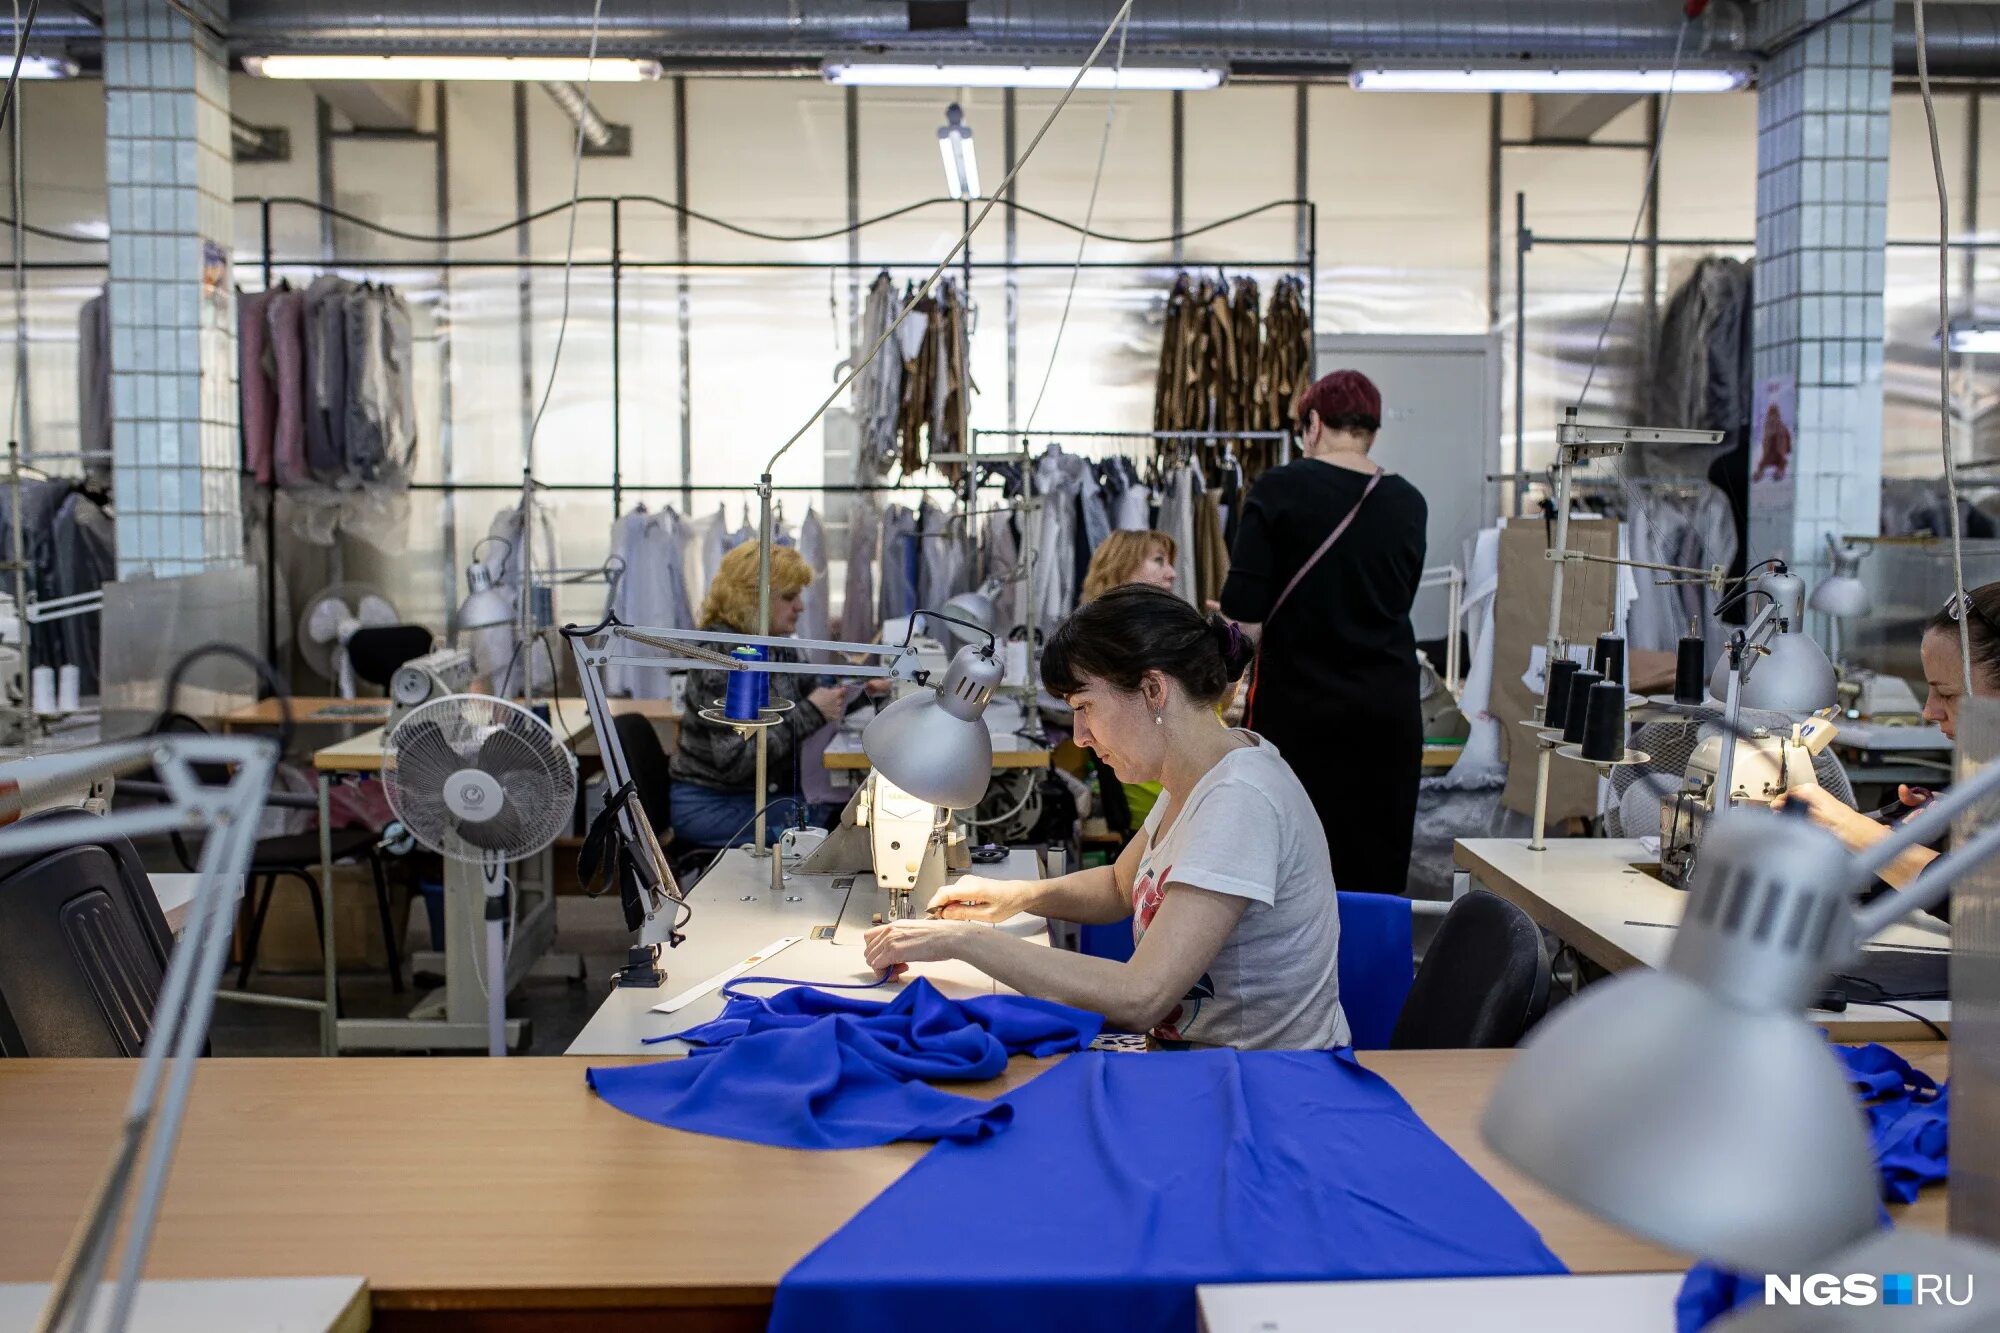 Новосибирские фабрики сайт. Швейная фабрика. Швейная фабрика Новосибирск. Фабрики Новосибирска. Женщины шьют одежду на фабрике.